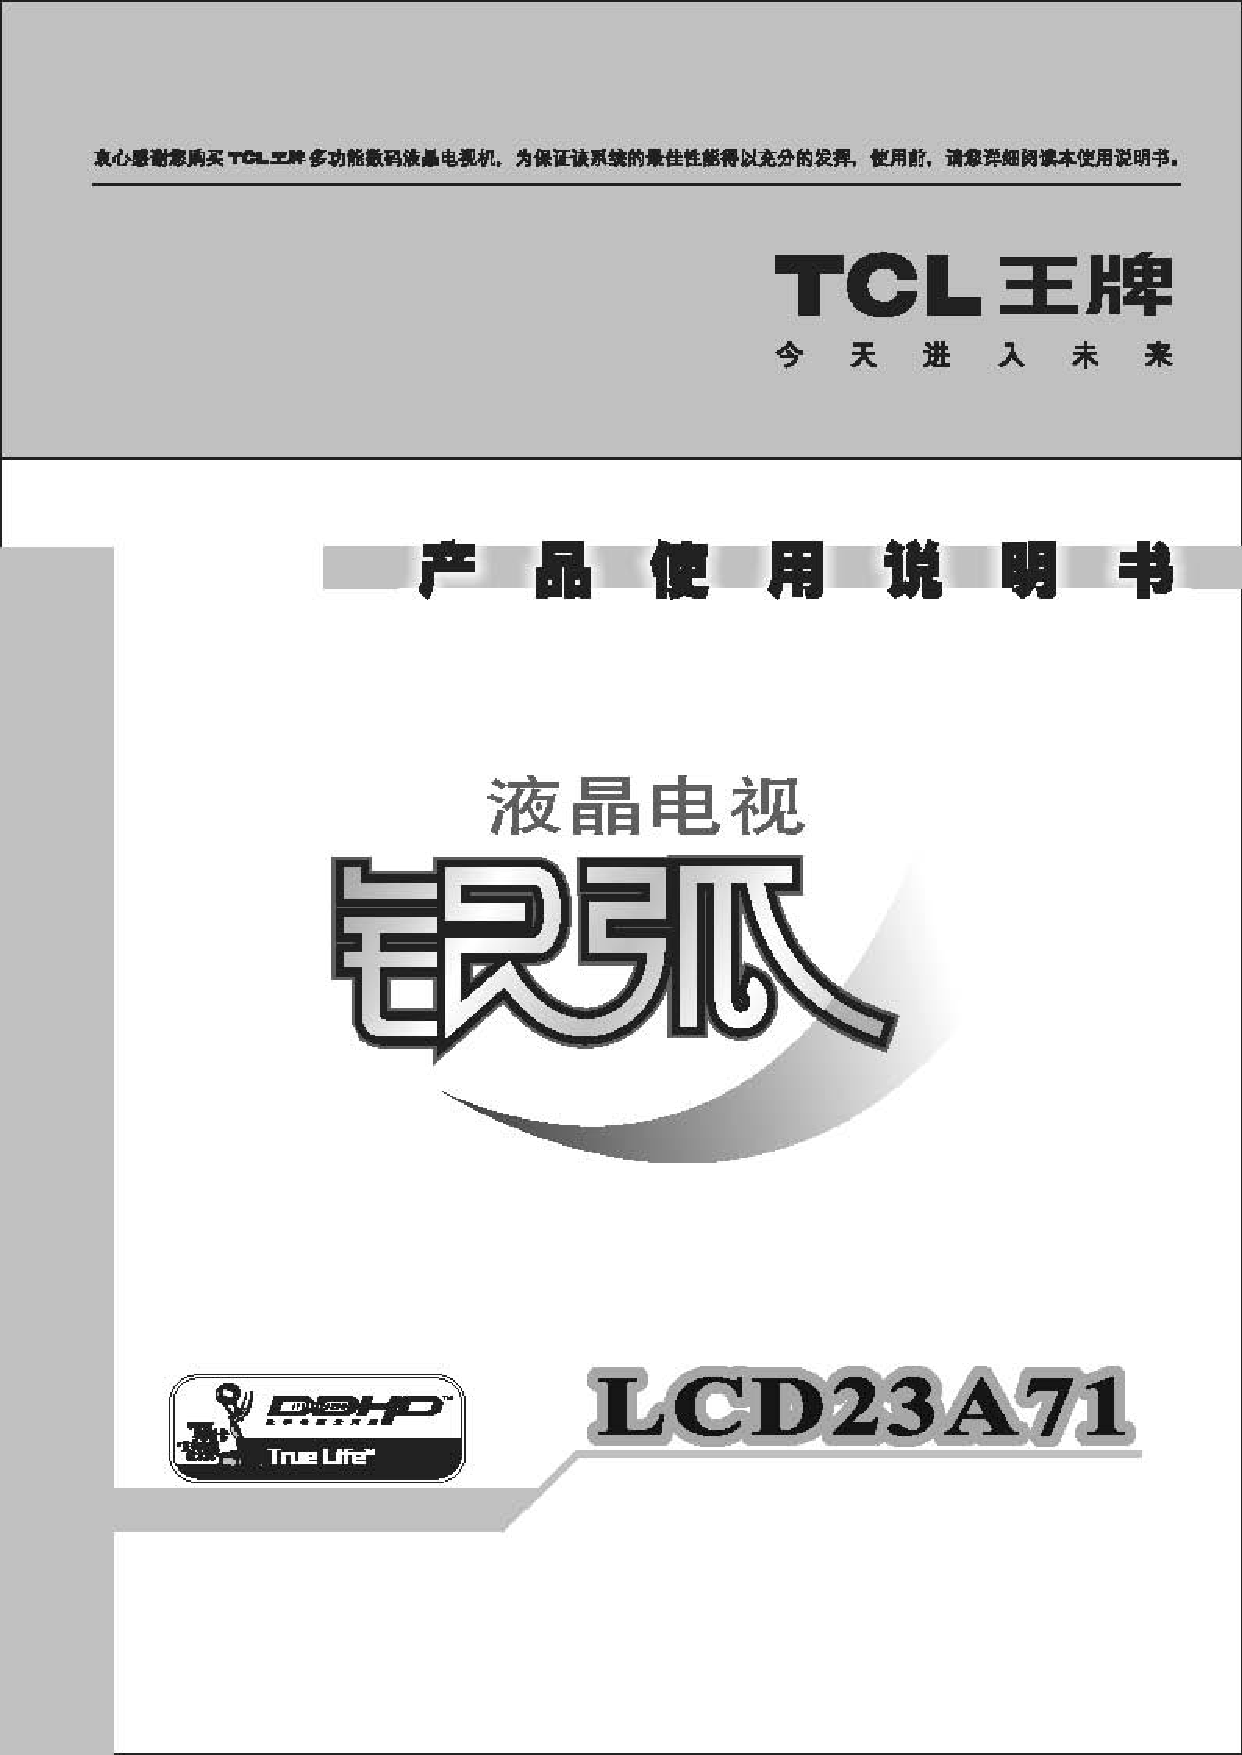 TCL LCD23A71 使用说明书 封面